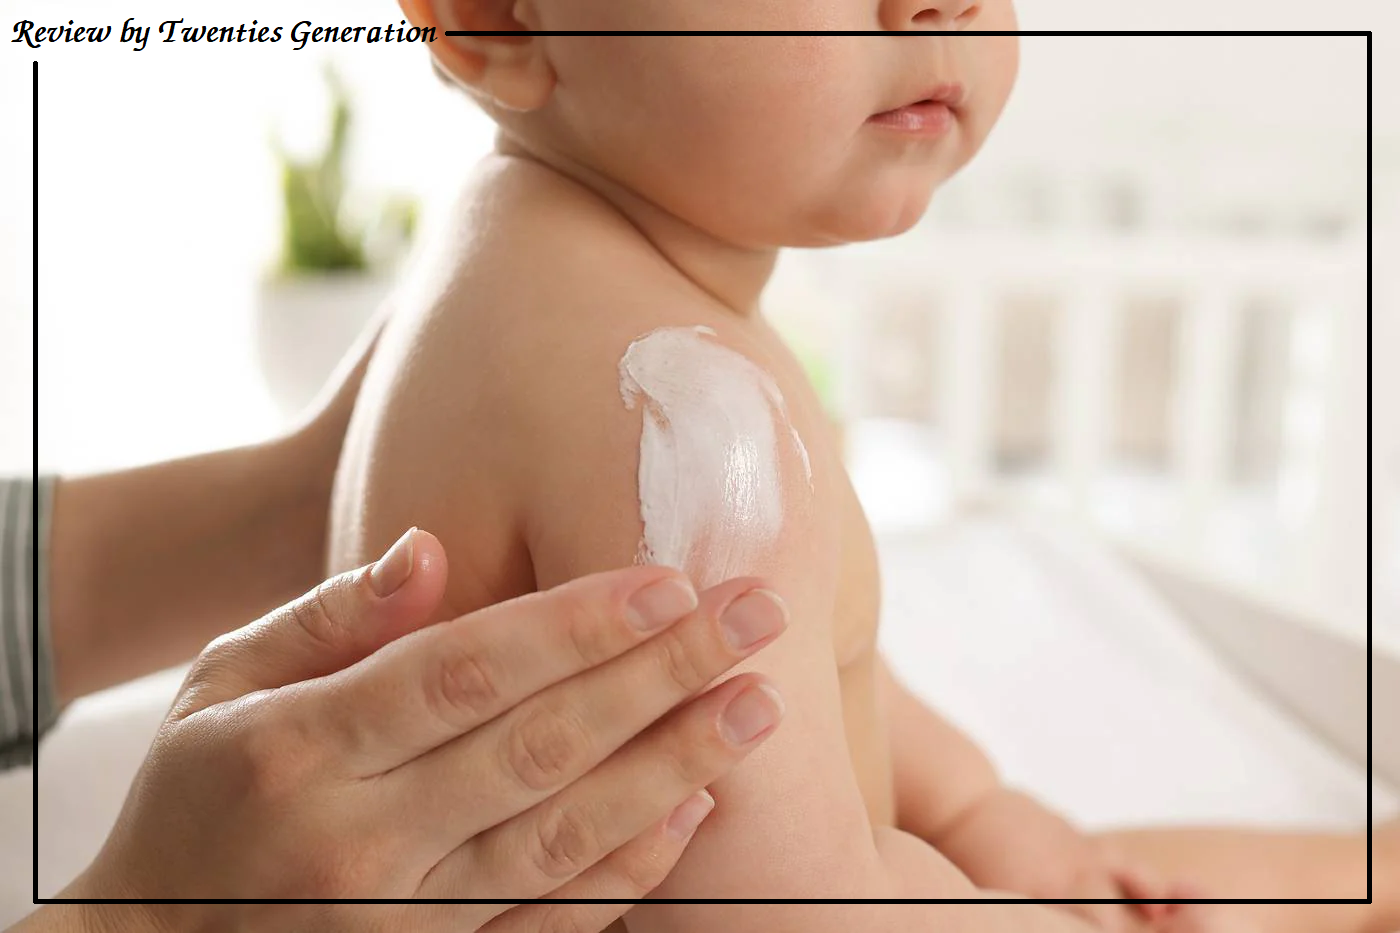 11 thành phần hóa mỹ phẩm nên tránh sử dụng cho trẻ sơ sinh và trẻ nhỏ